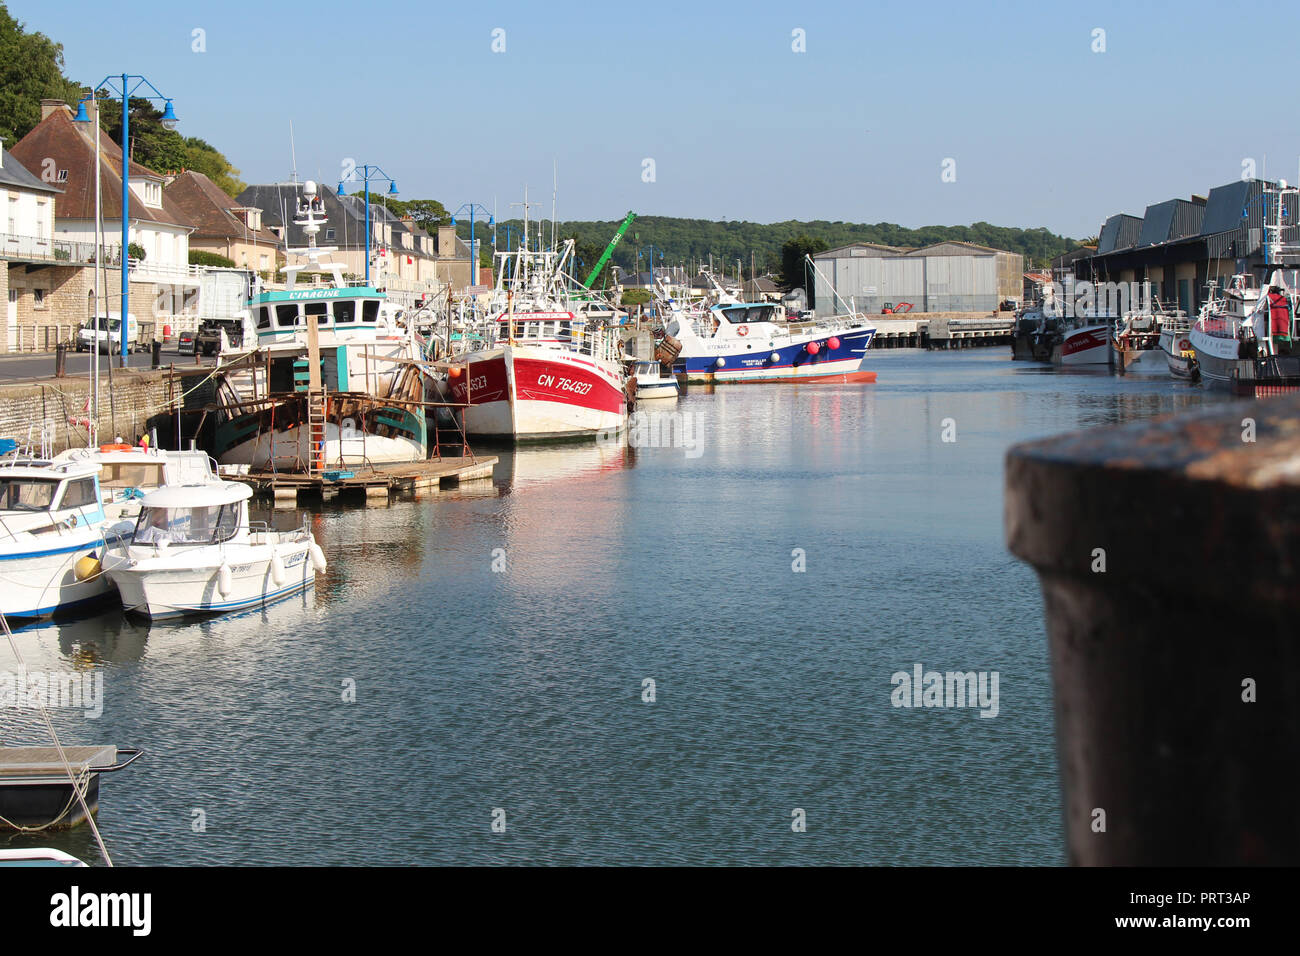 The port of Port-en-Bessin (France). Stock Photo